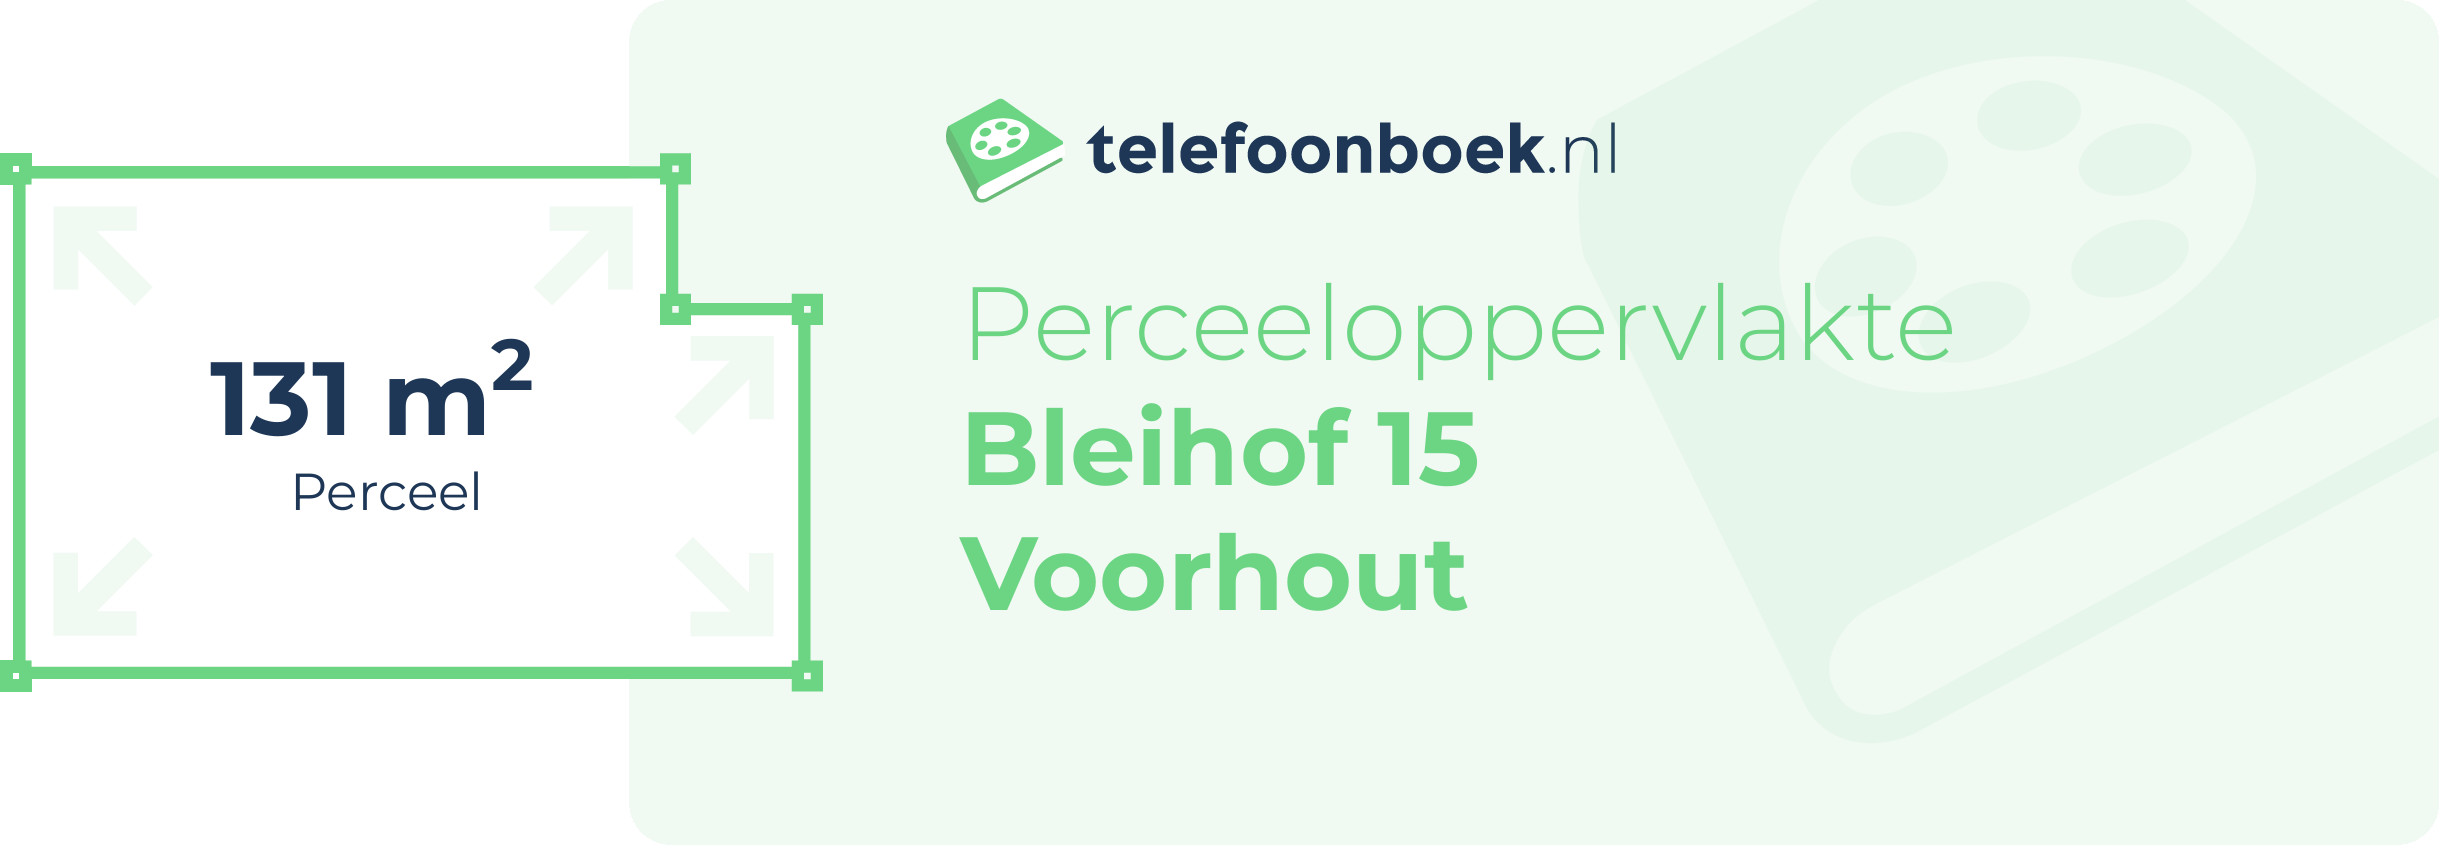 Perceeloppervlakte Bleihof 15 Voorhout